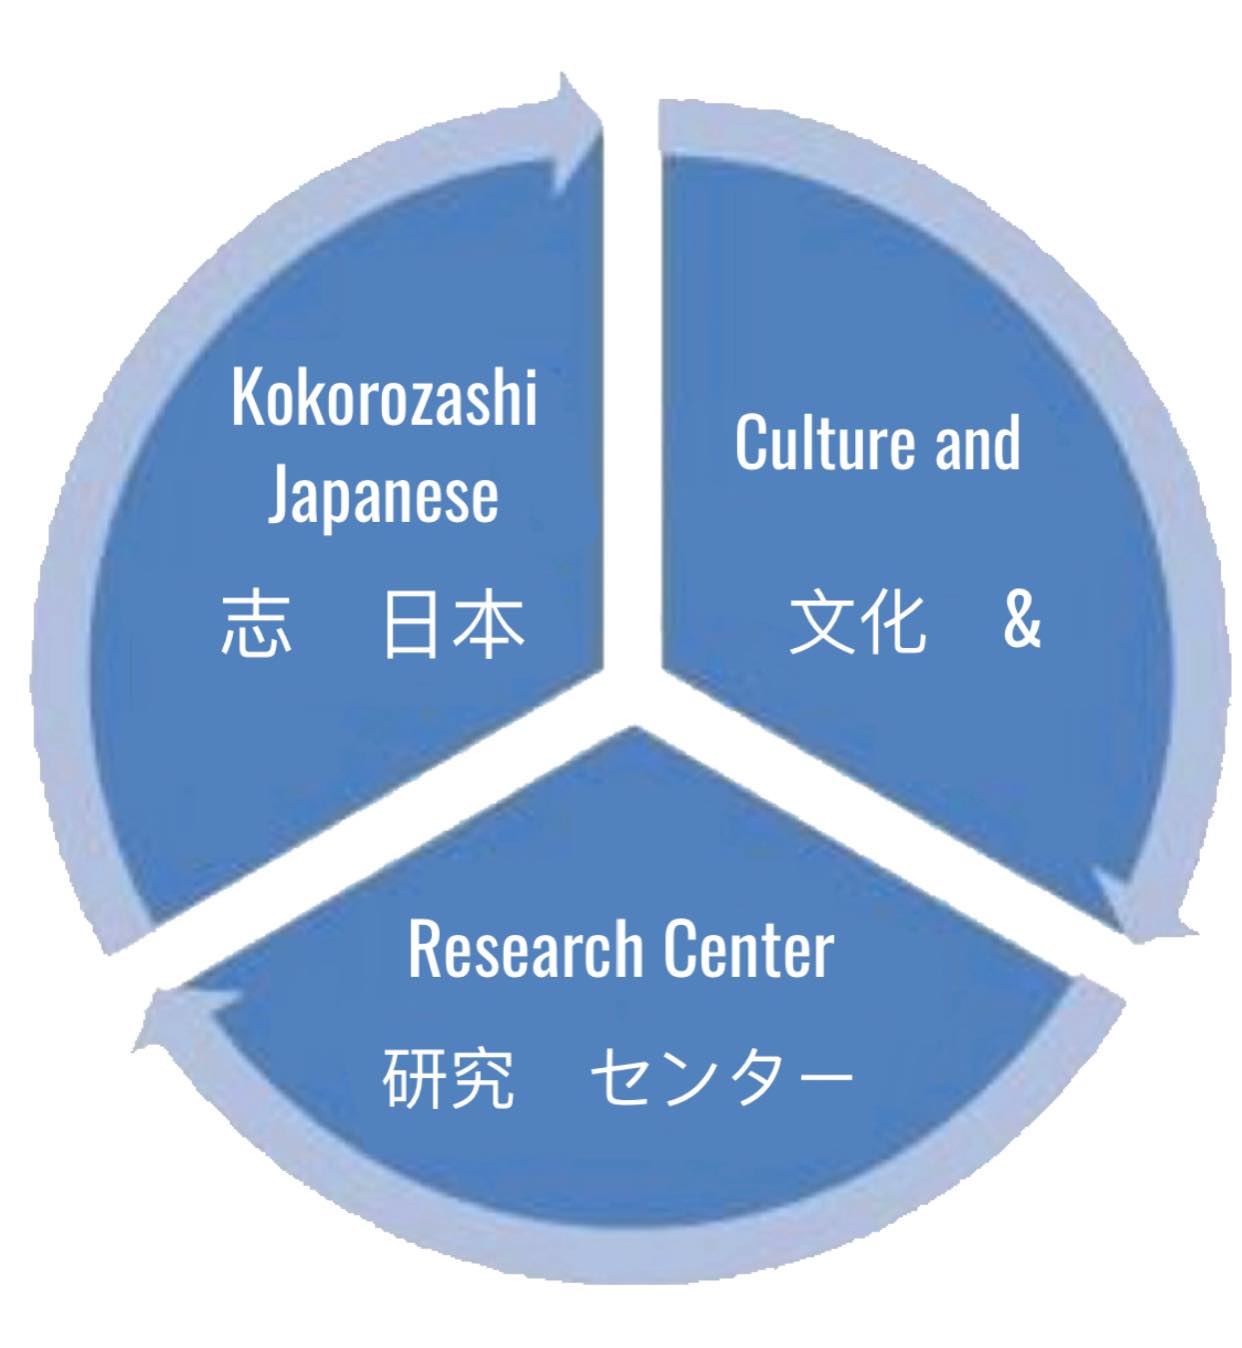 Kokorozashi Japanese Culture & Research Center